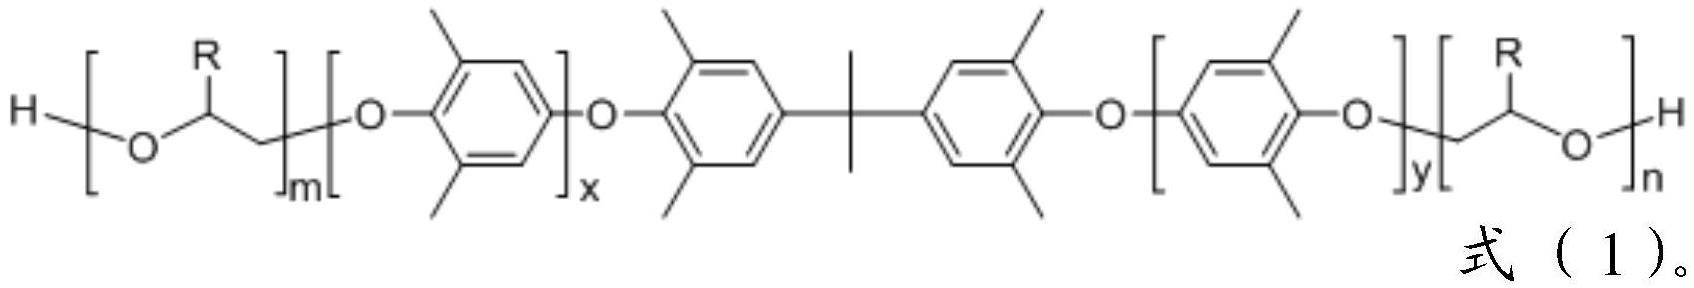 醇羟基封端的聚苯醚多元醇及其制备方法